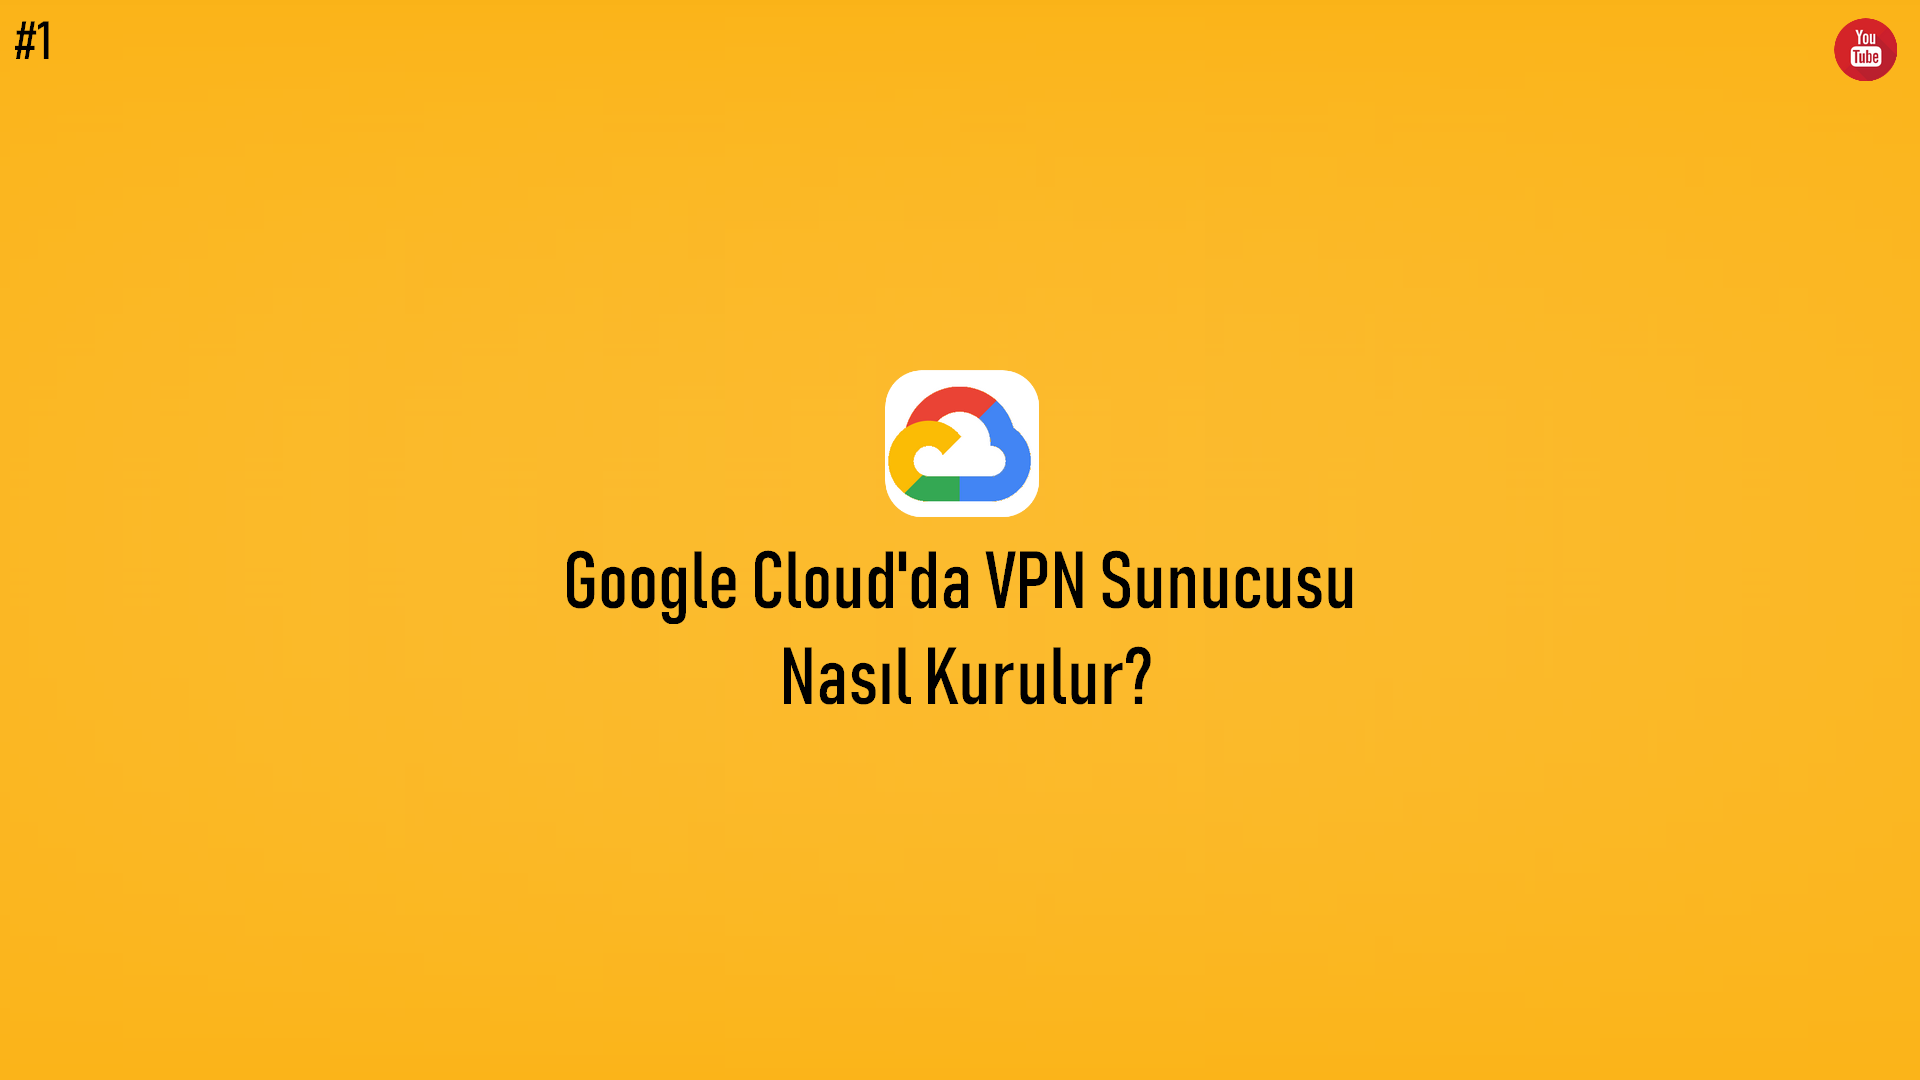 Google Cloud'da VPN Sunucusu Nasıl Kurulur? (Video İçerik) başlıklı içeriğin kapak resmi.